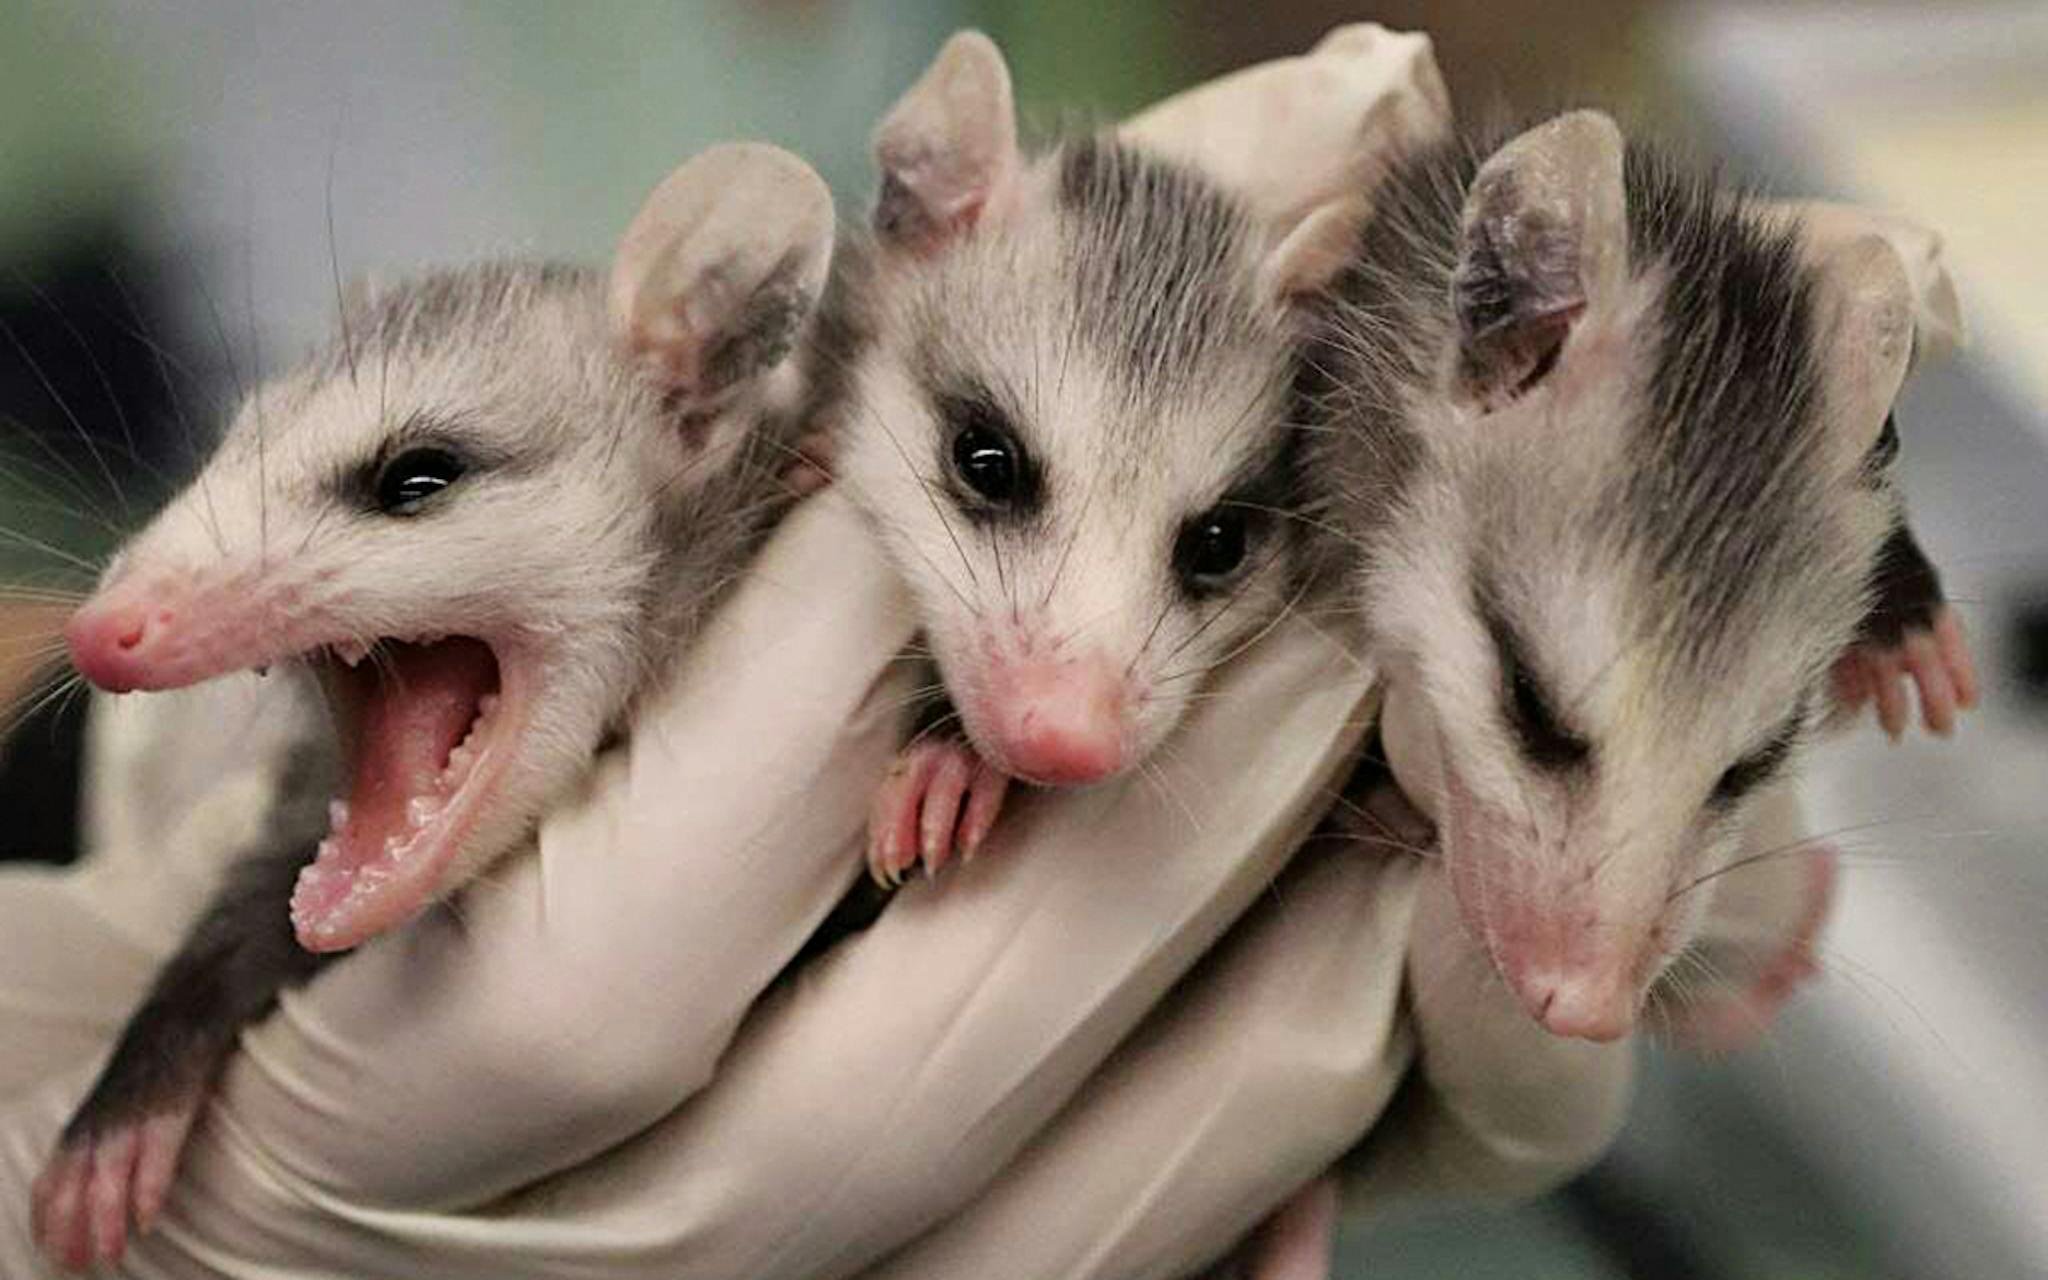 Three sleepy baby opossums.